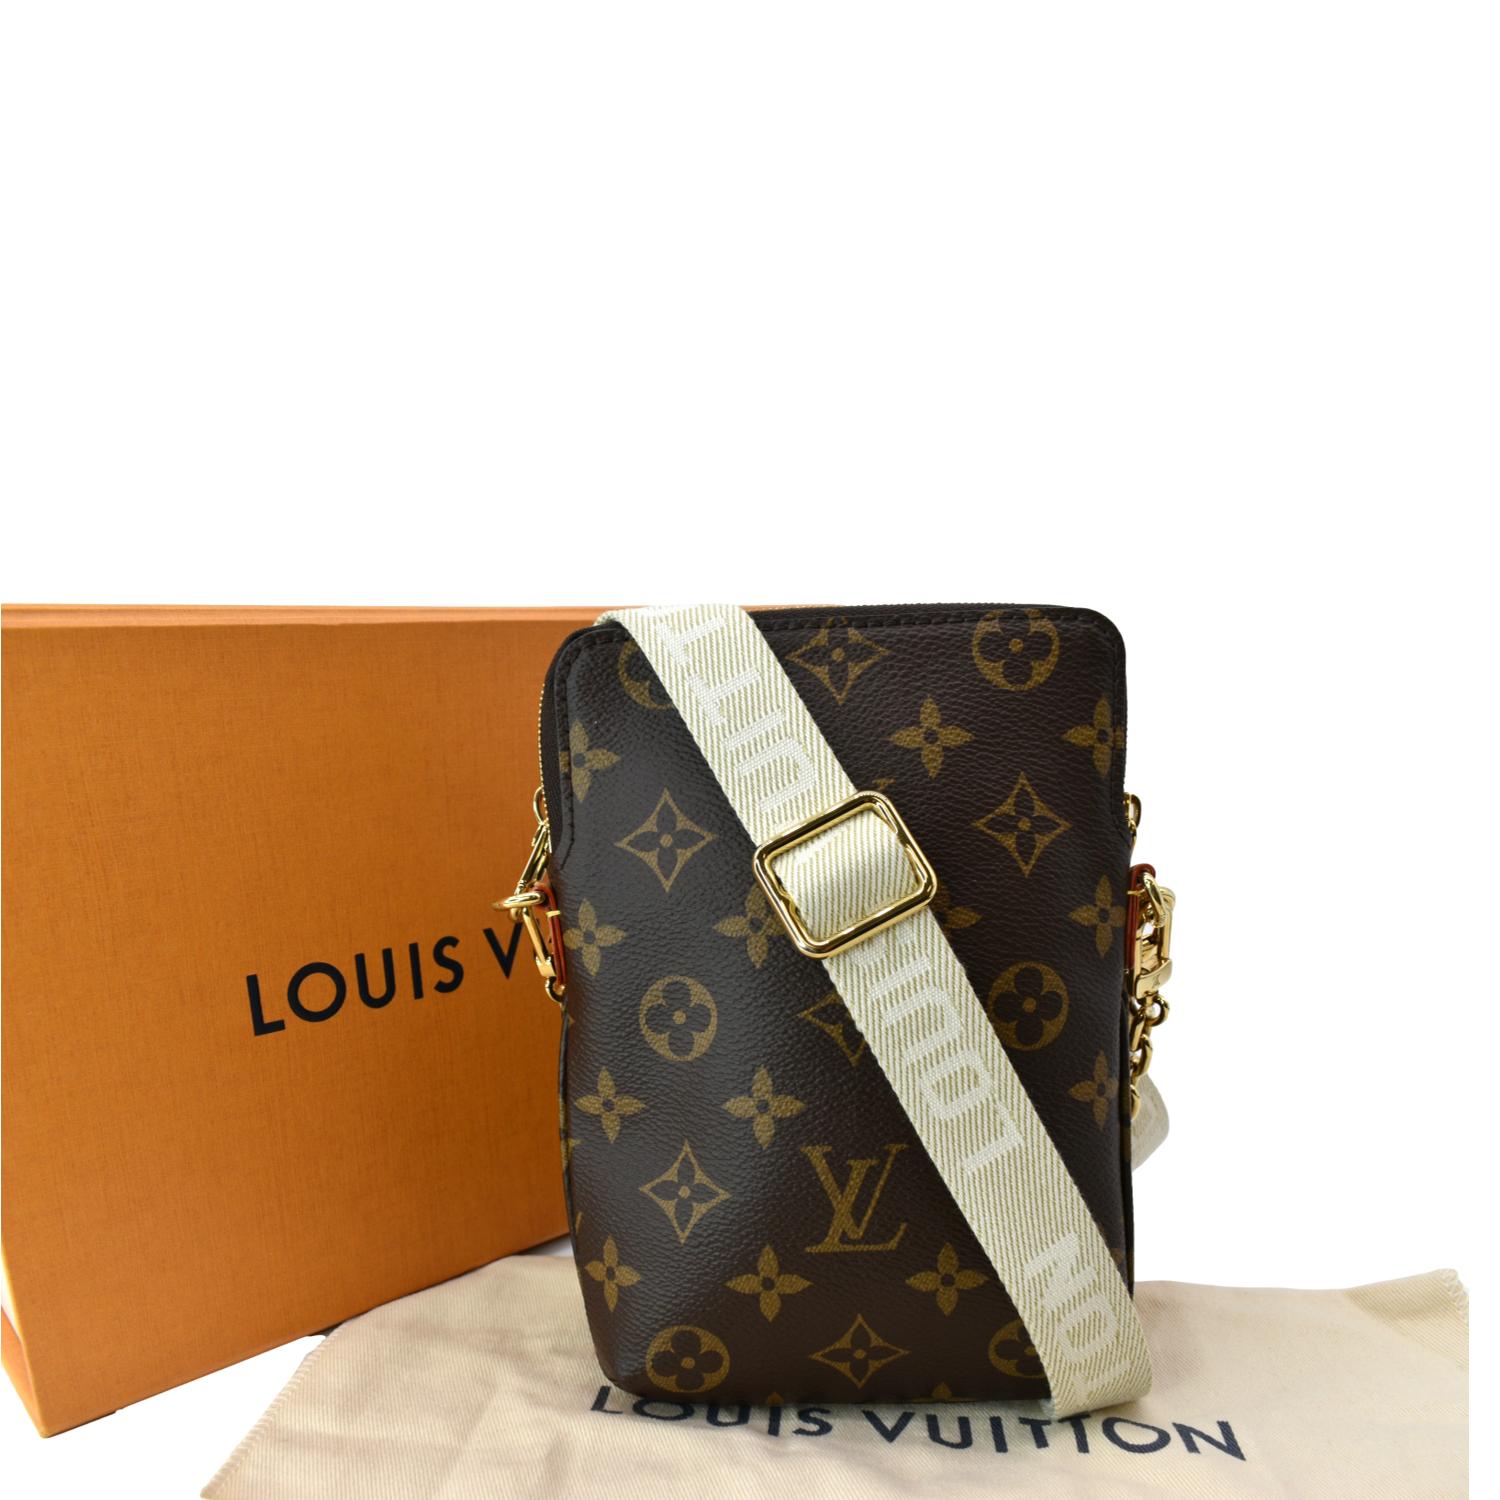 Louis Vuitton đã phải thu hồi “siêu phẩm” trị giá 3 tỷ đồng như